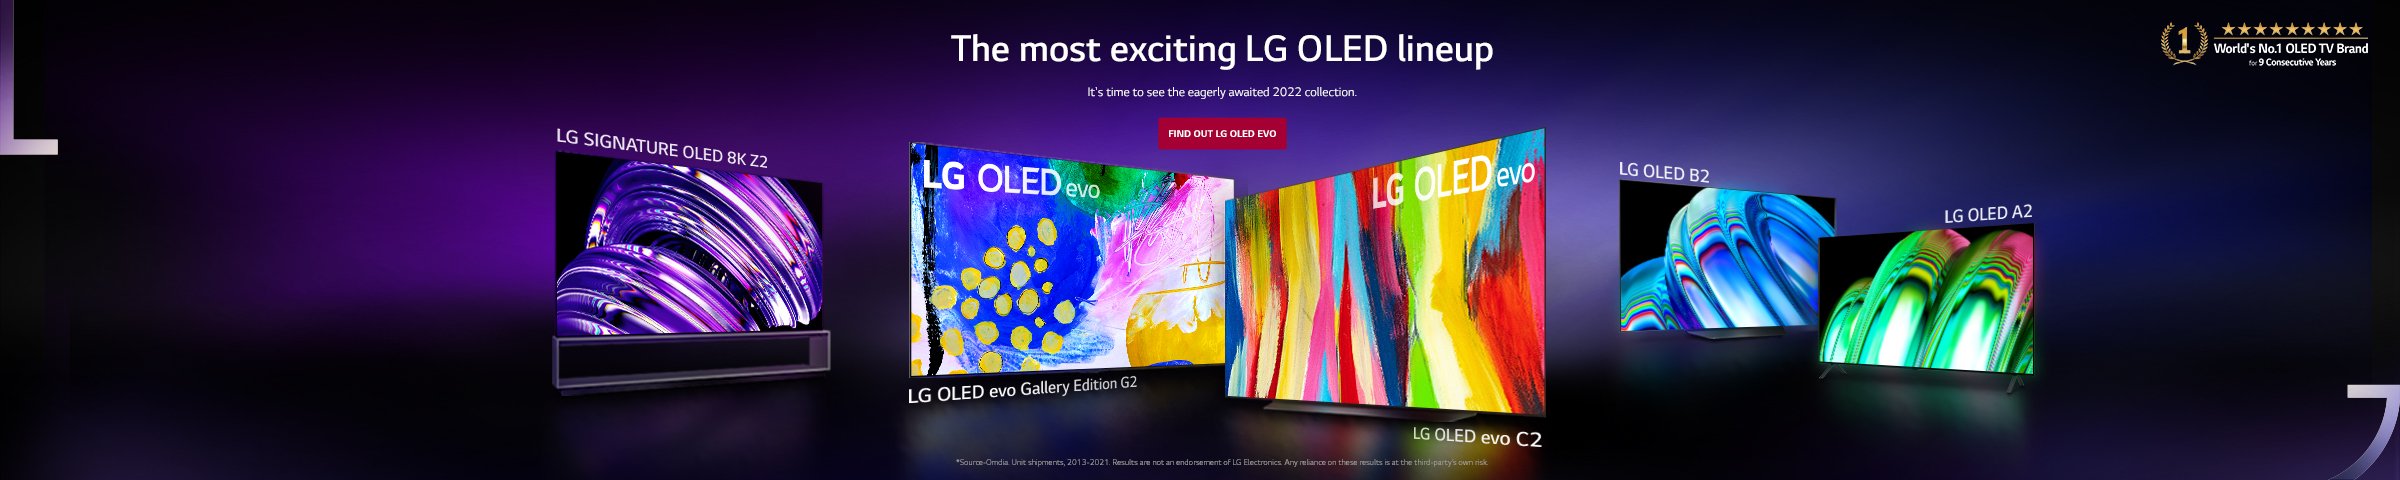 LG OLED lineup